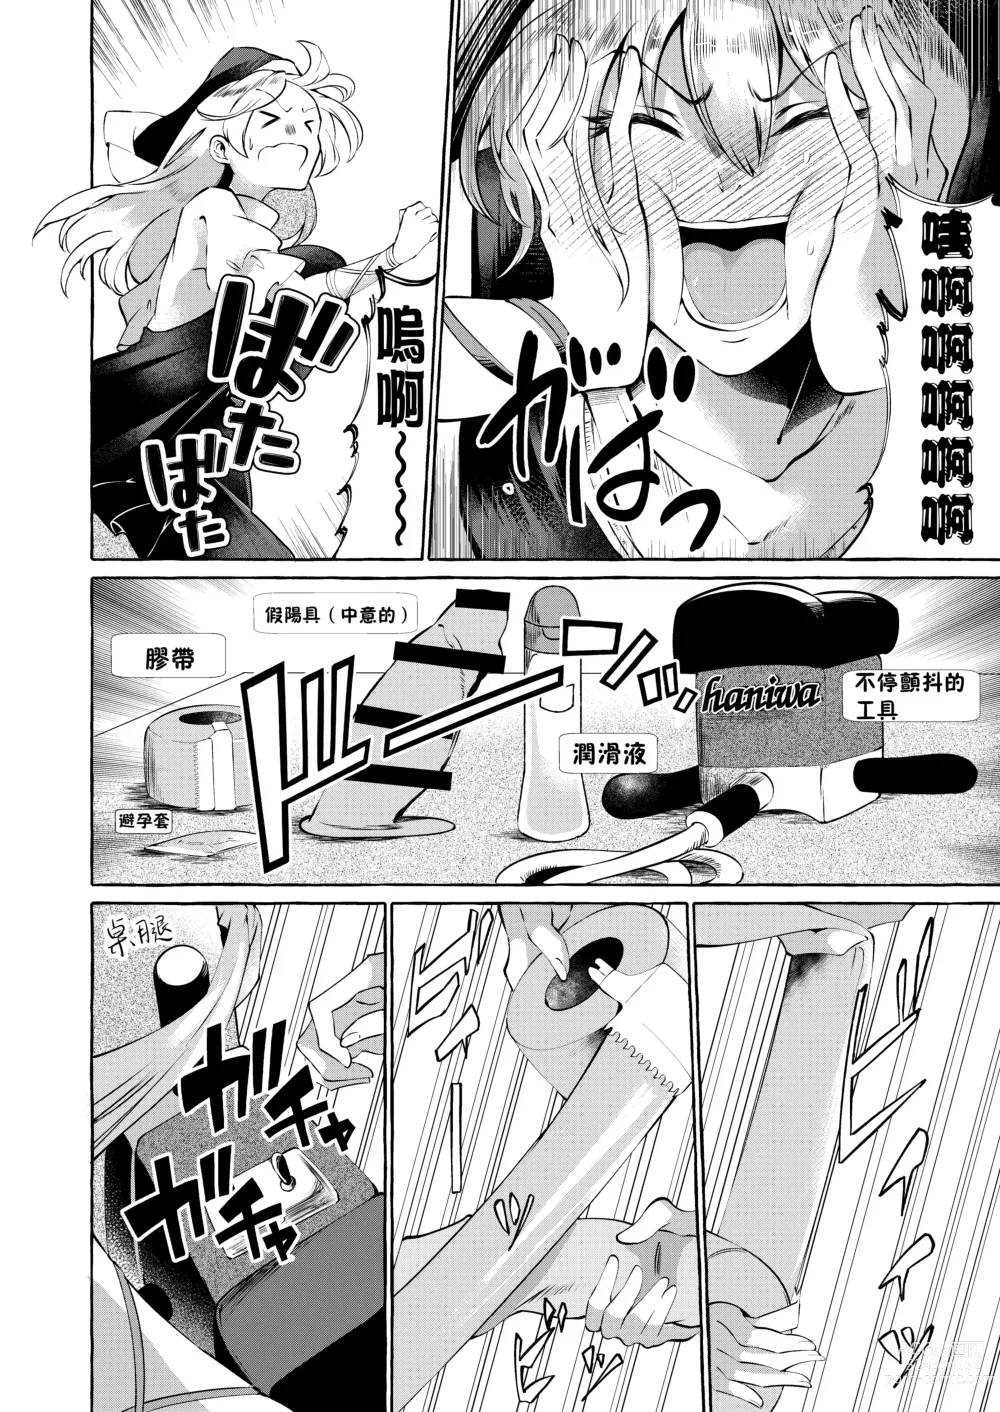 Page 5 of doujinshi 將肢體托付於妄想